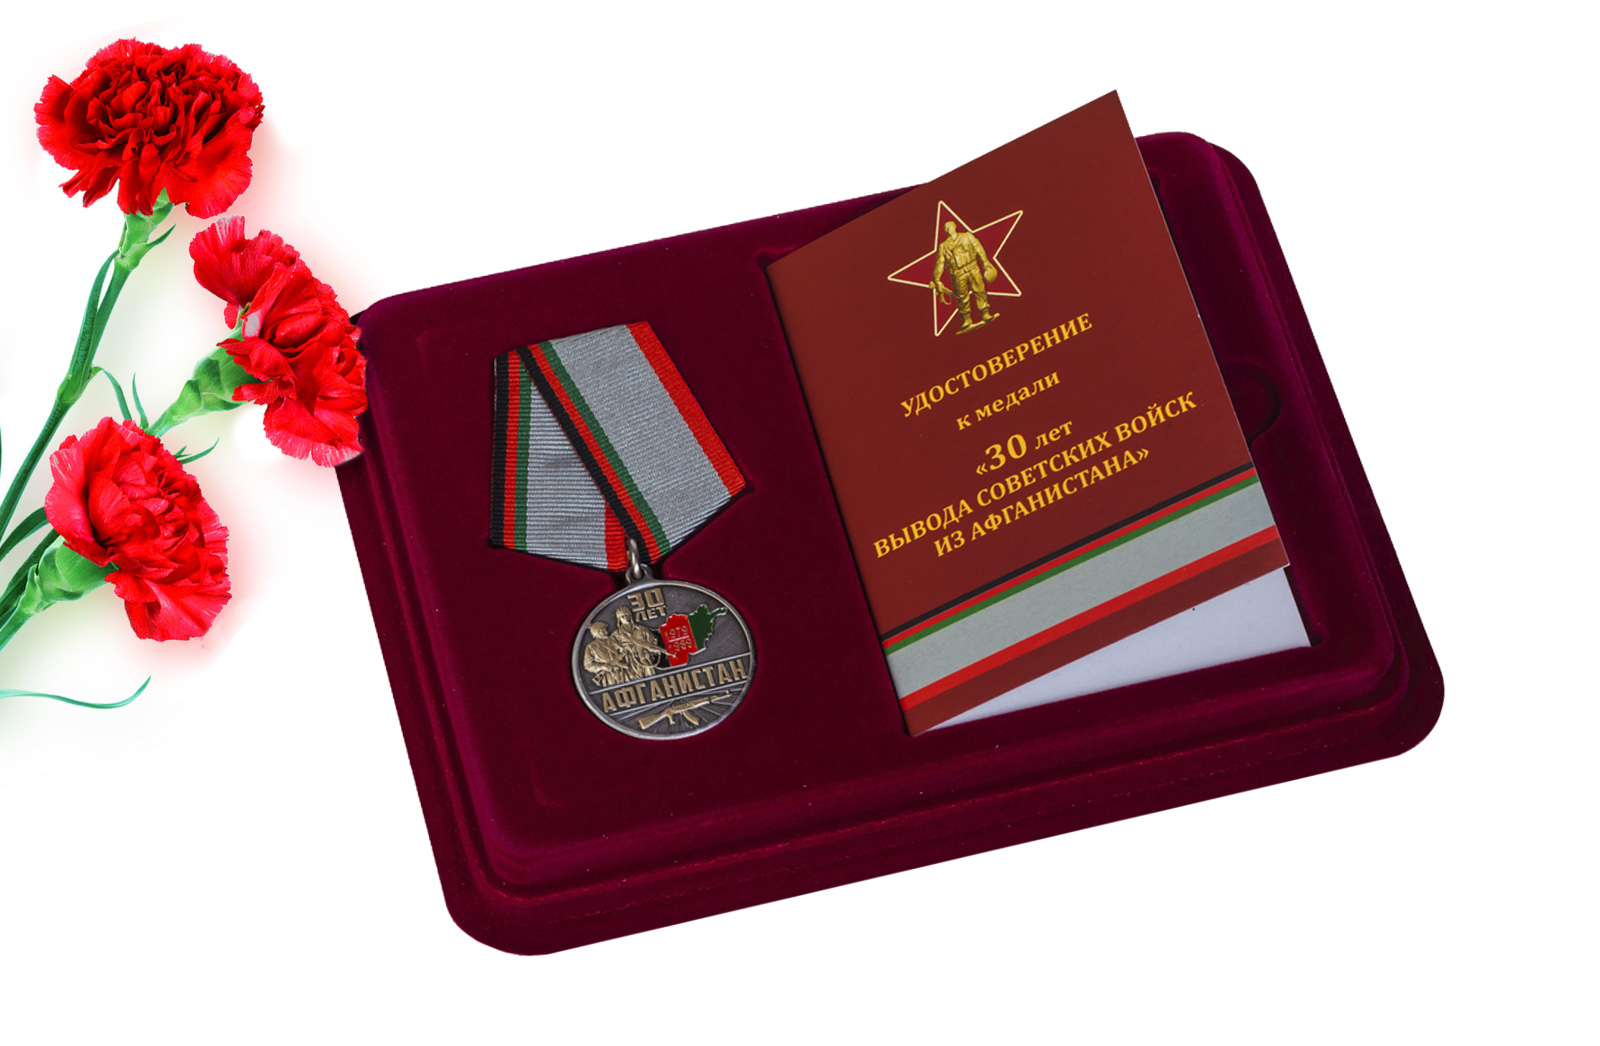 Купить памятную медаль 30 лет. Афганистан оптом или в розницу